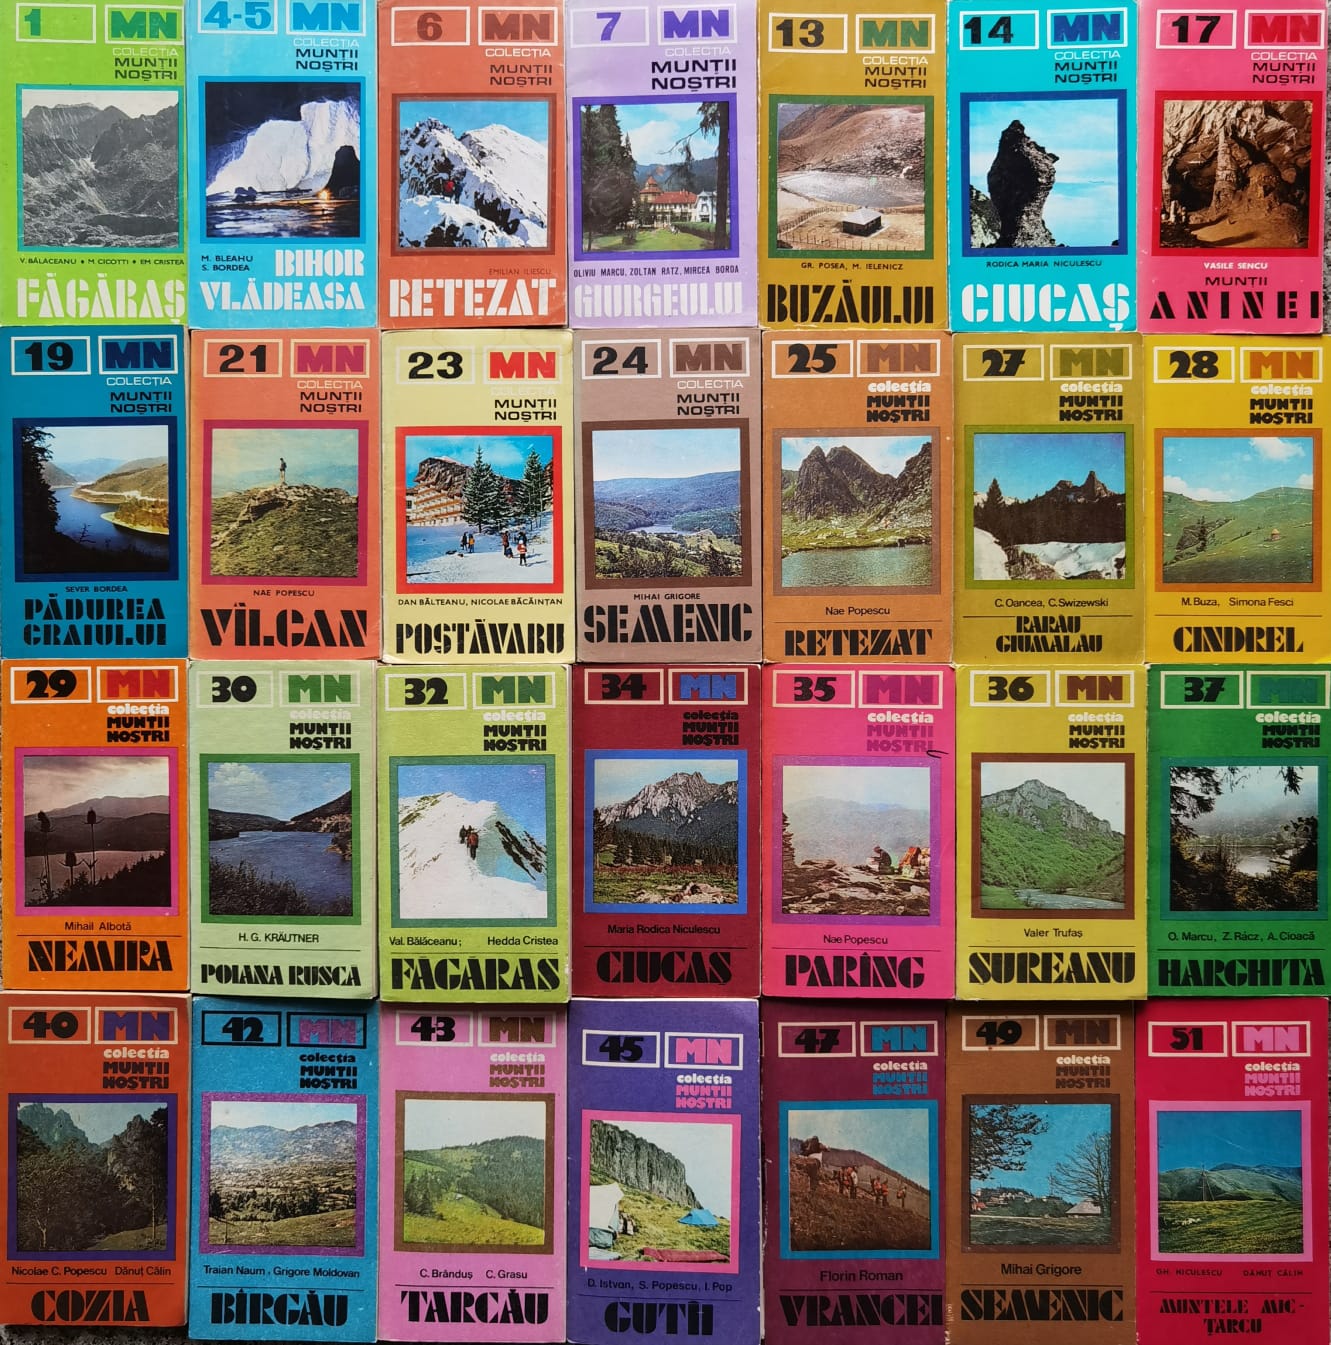 28 de volume cu harti din colectia muntii nostri (1-51)                                              colectiv                                                                                            